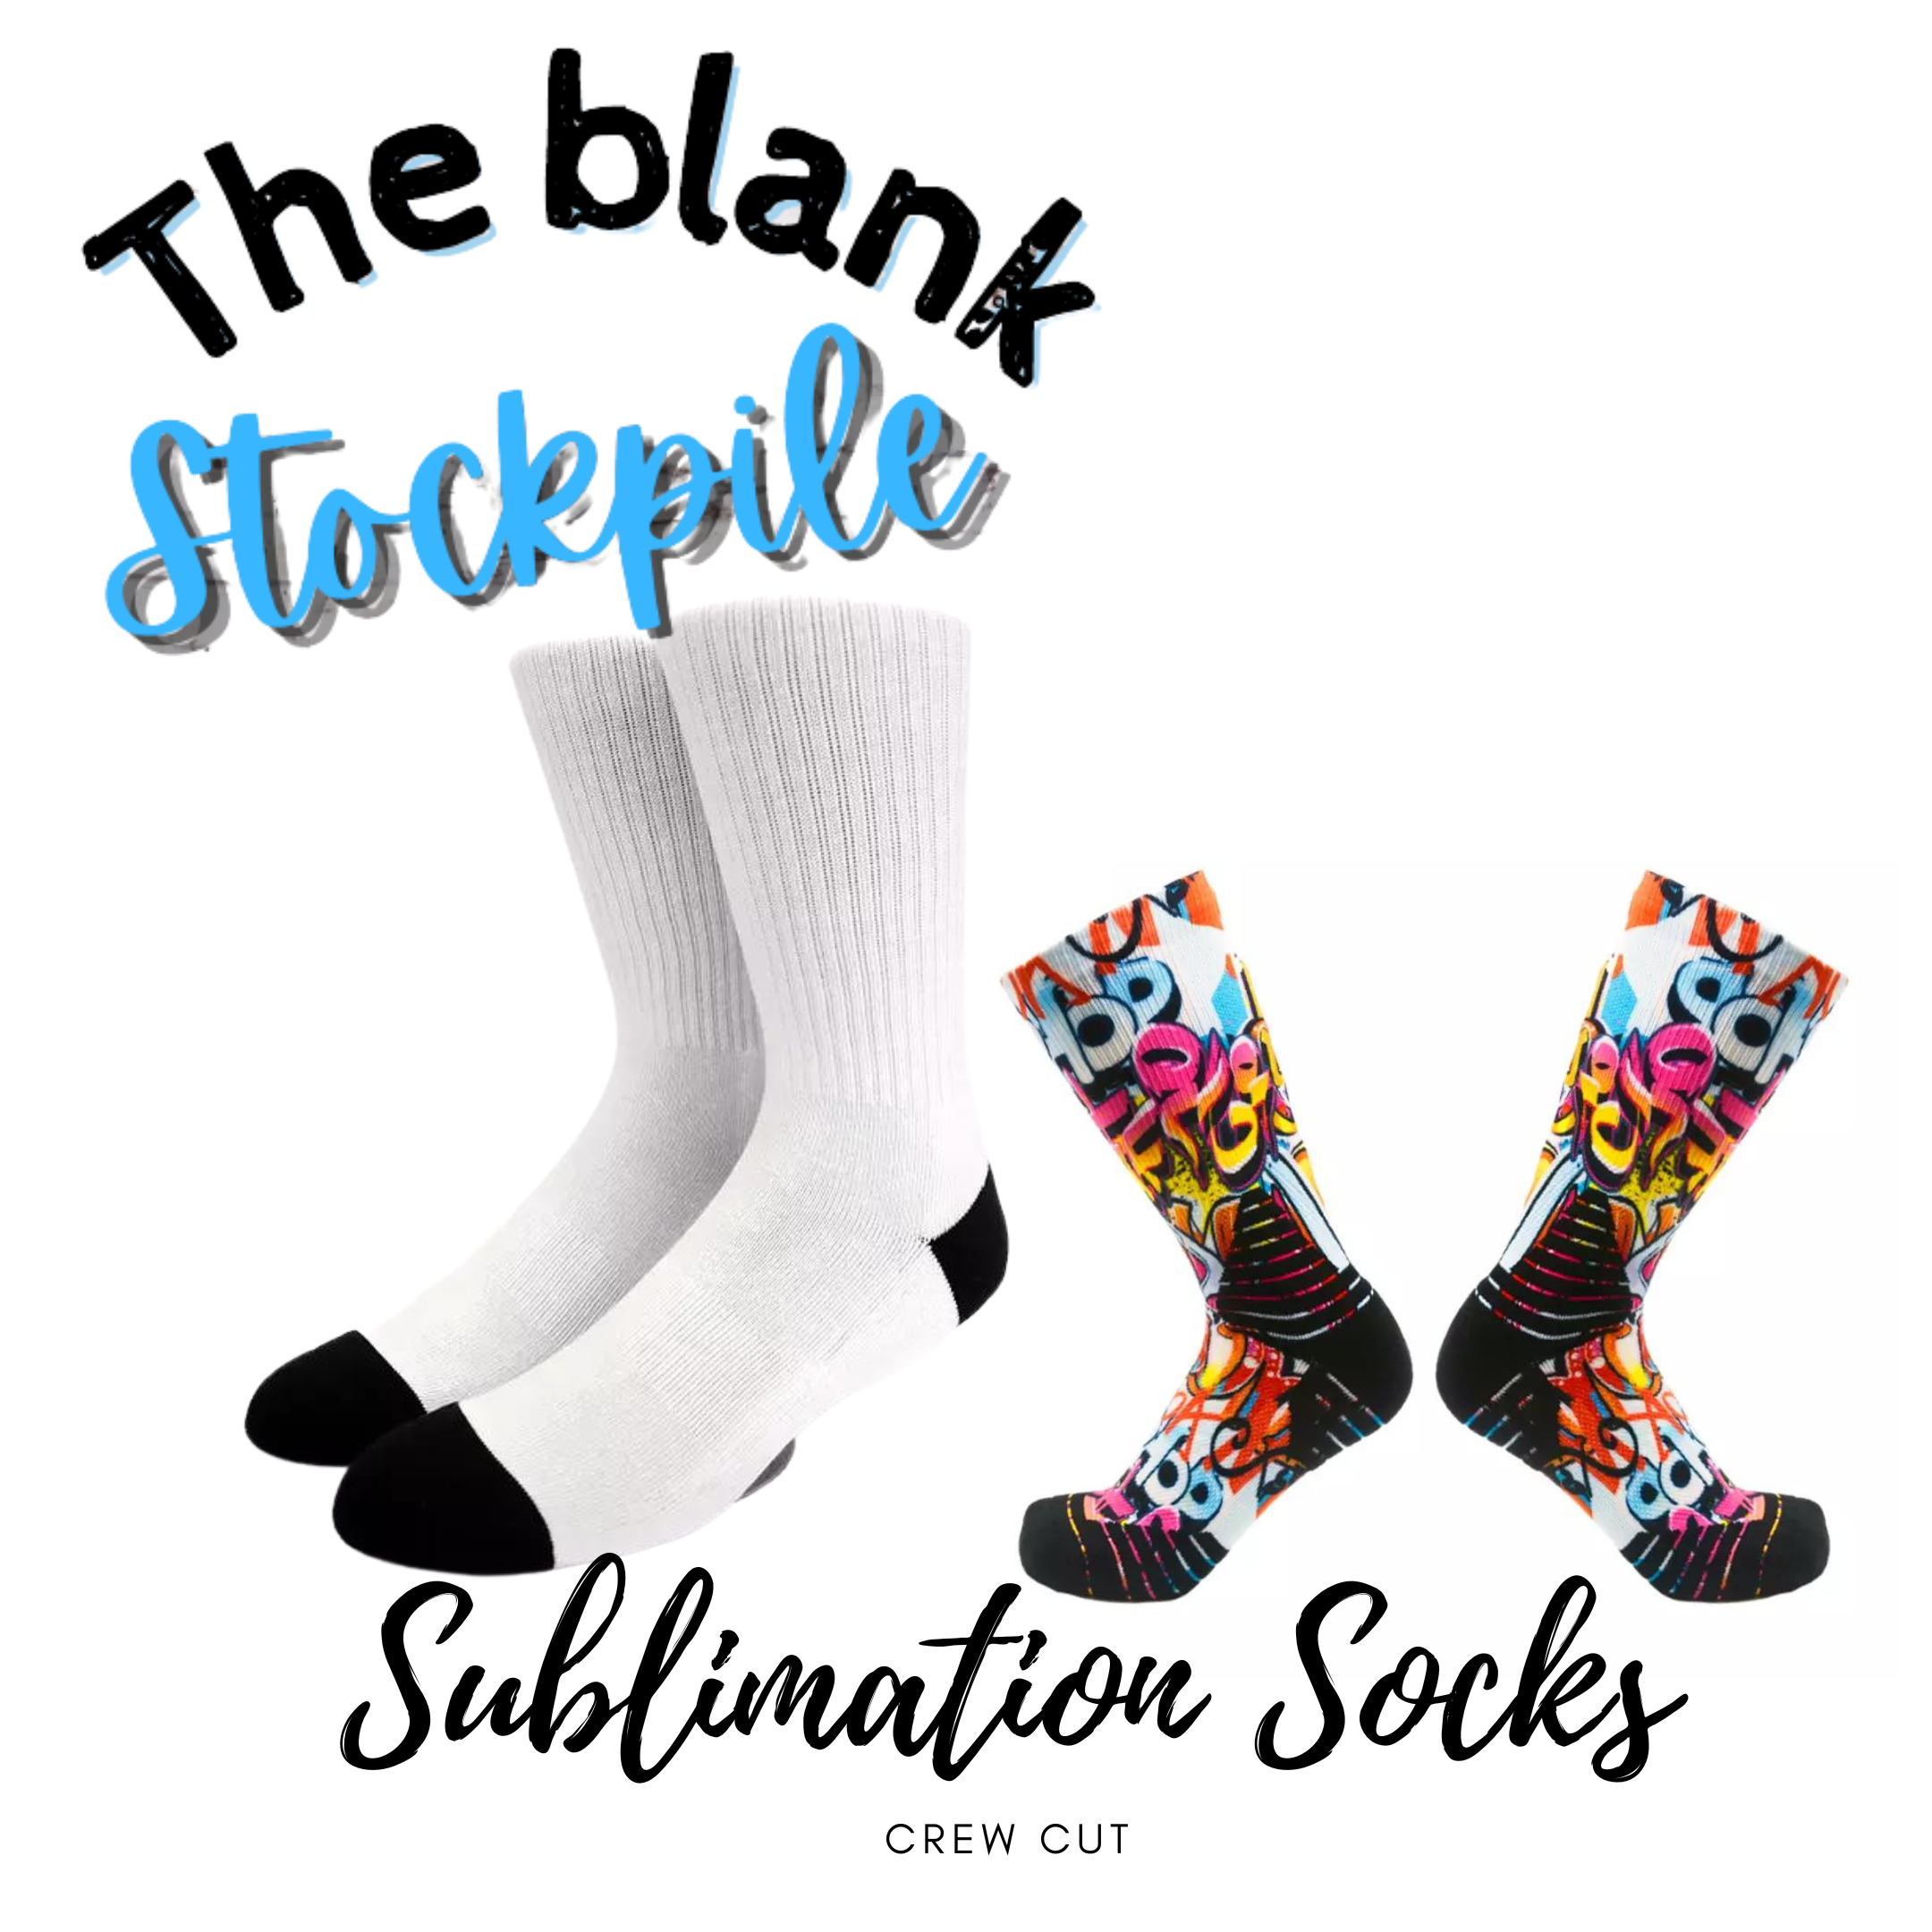 Unisex crew sublimation socks – The Blank Stockpile